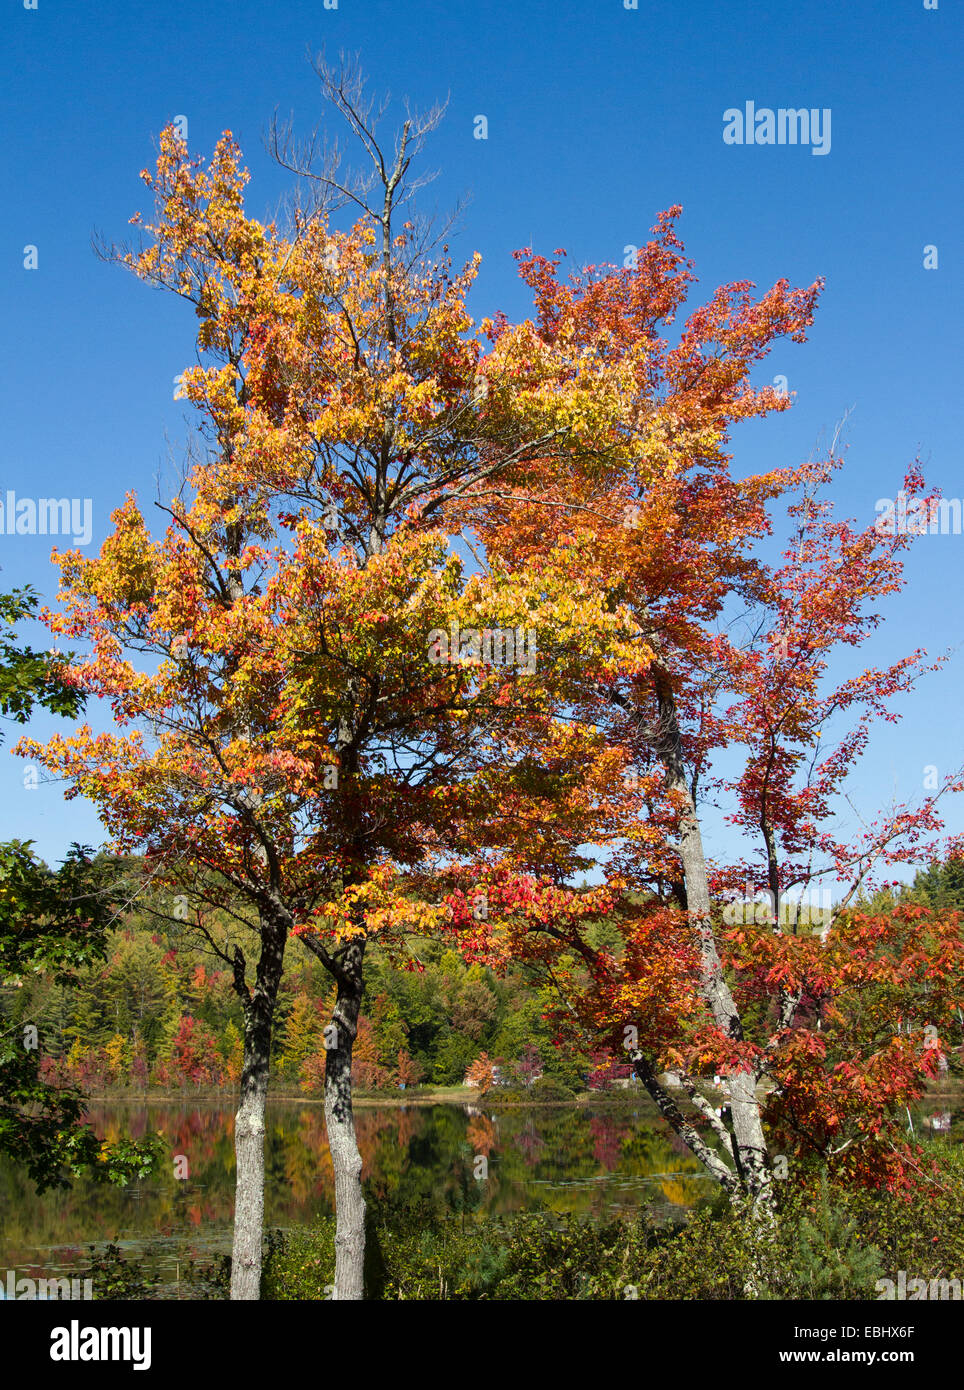 Wasser-Fluss-See-Szene Adirondack Mountains im Herbst Herbst Zeit des Jahres. Stockfoto